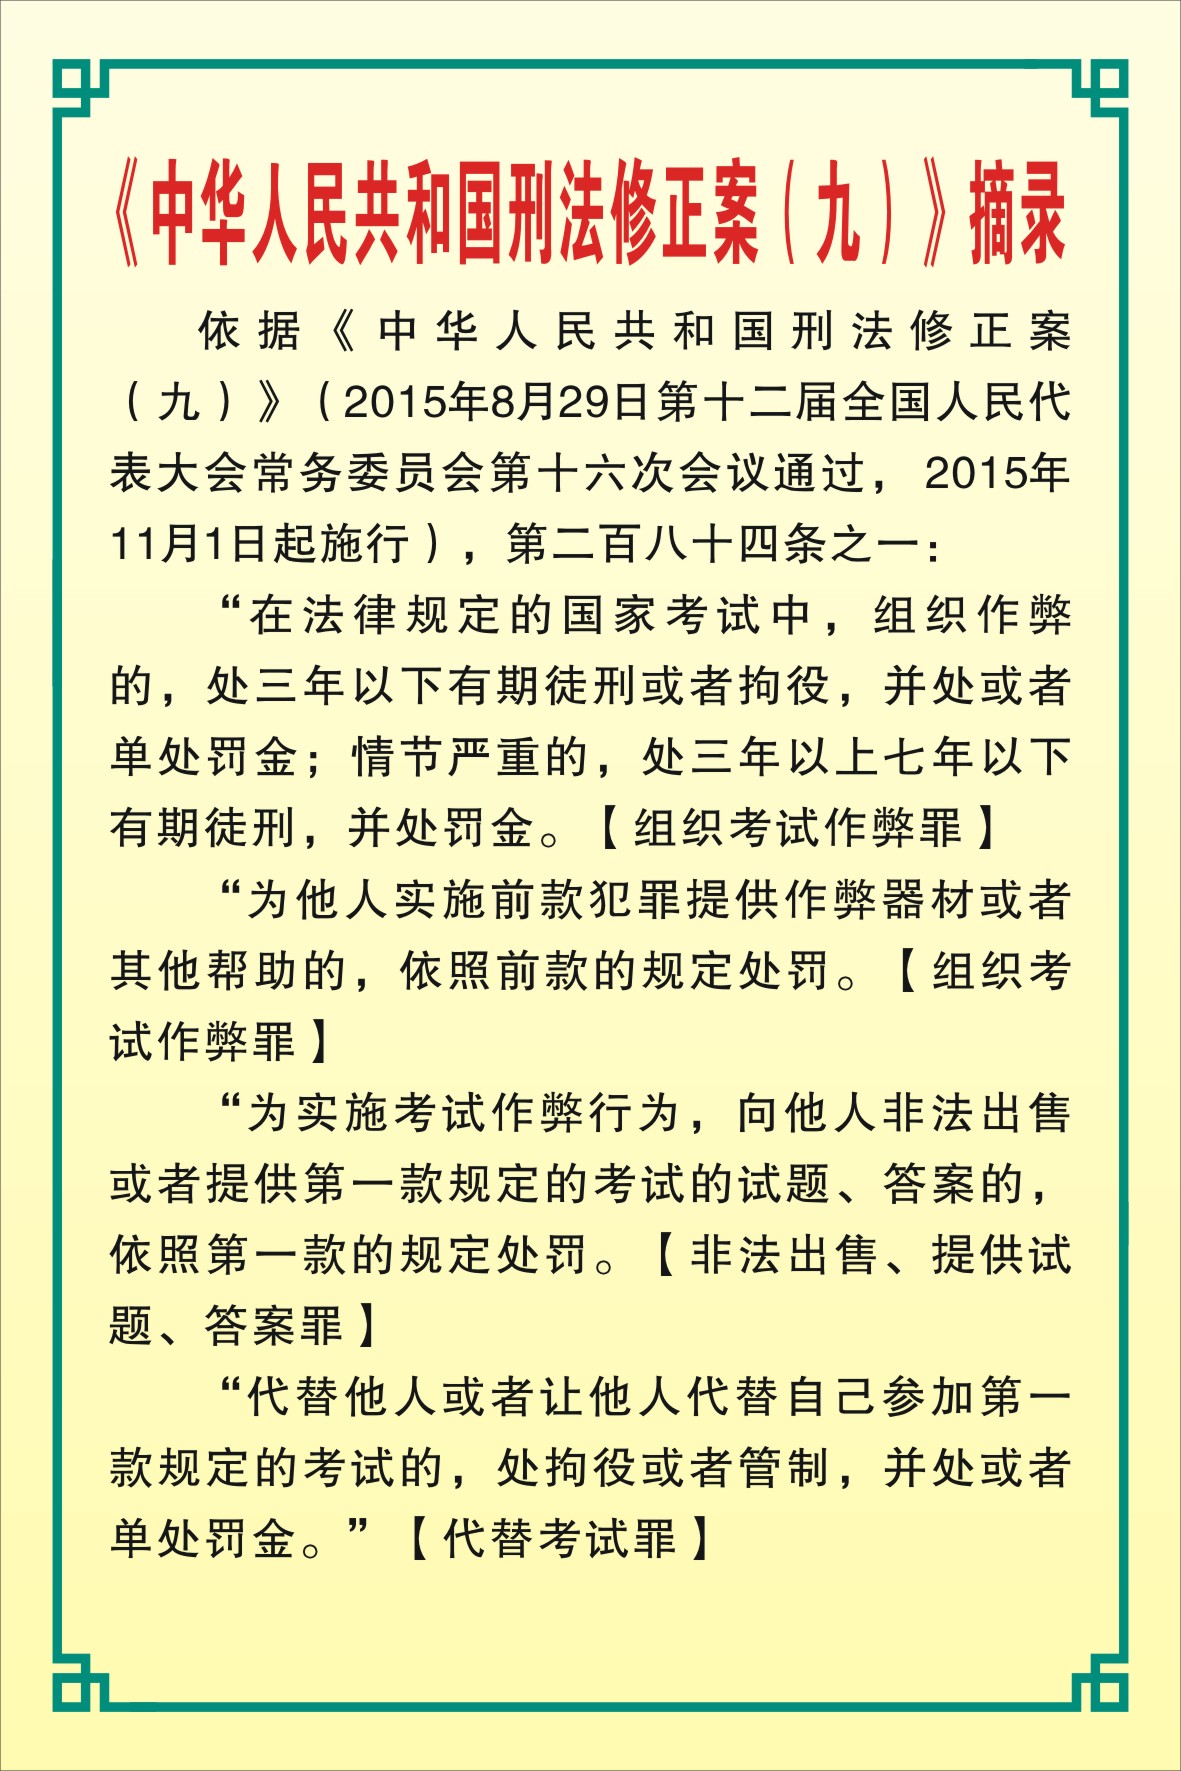 2.中华人民共和国刑法修正案九